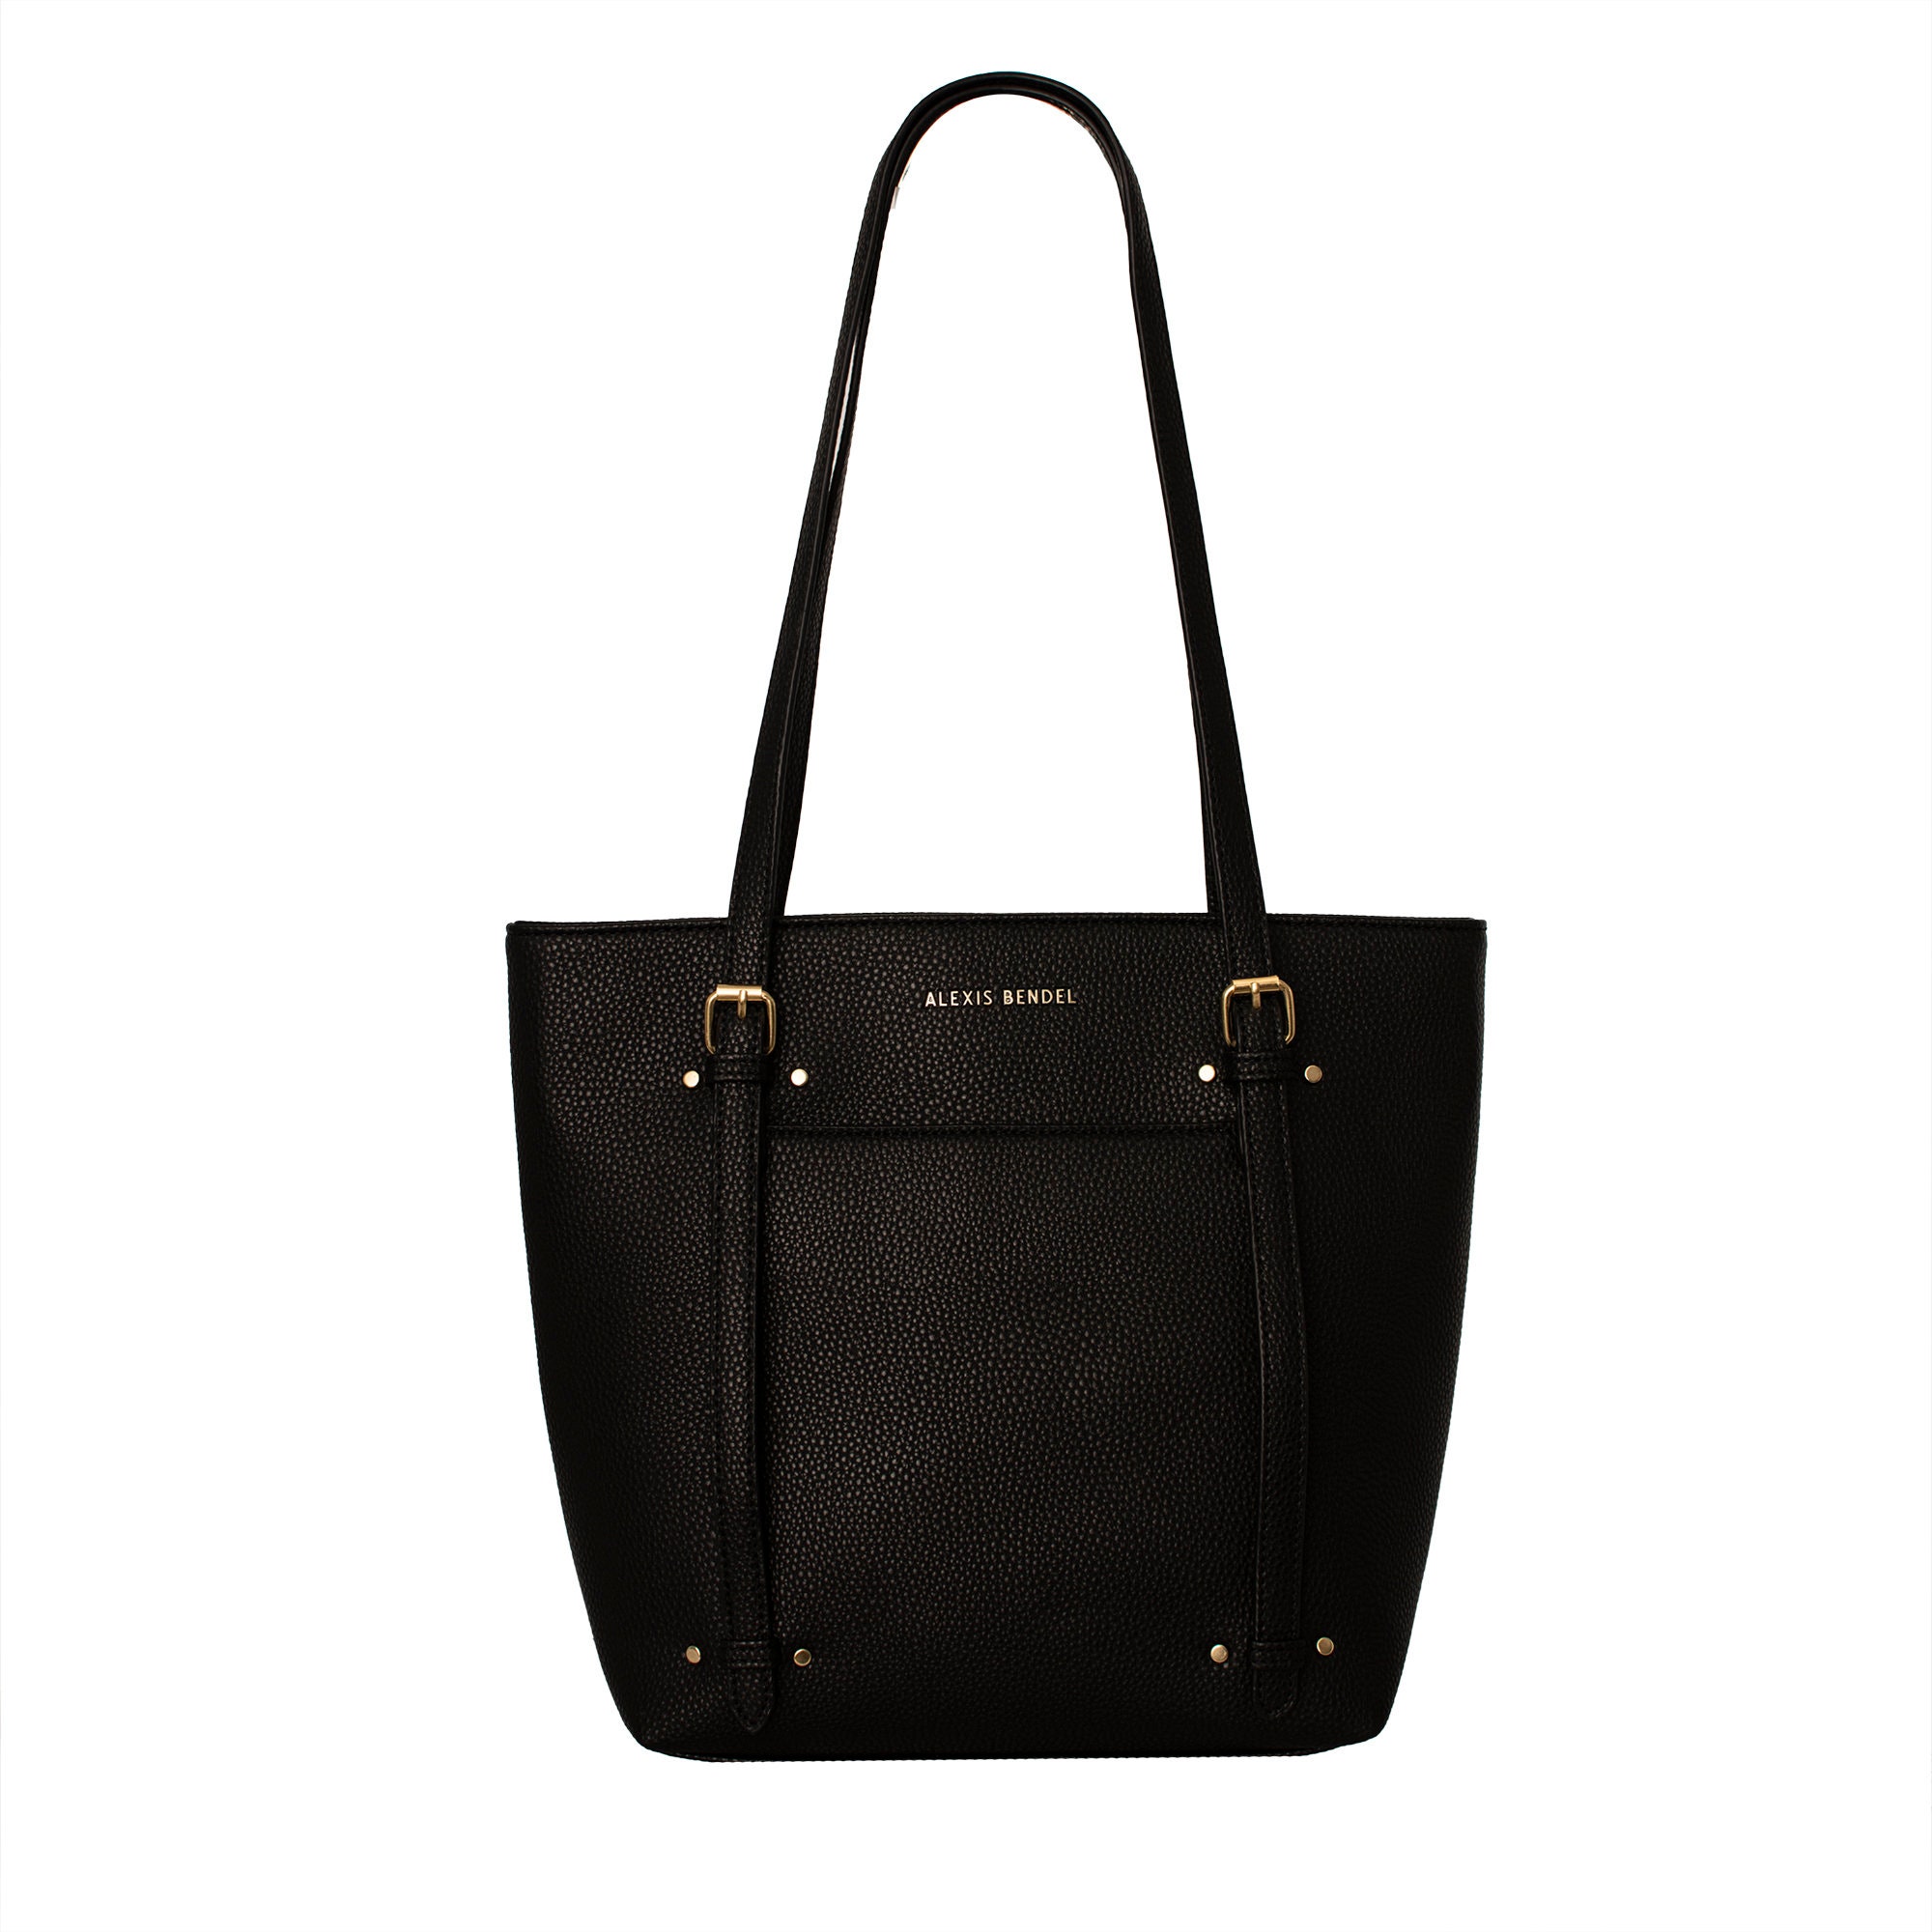 Alexis Bendel Elise Satchel Handbag in Black